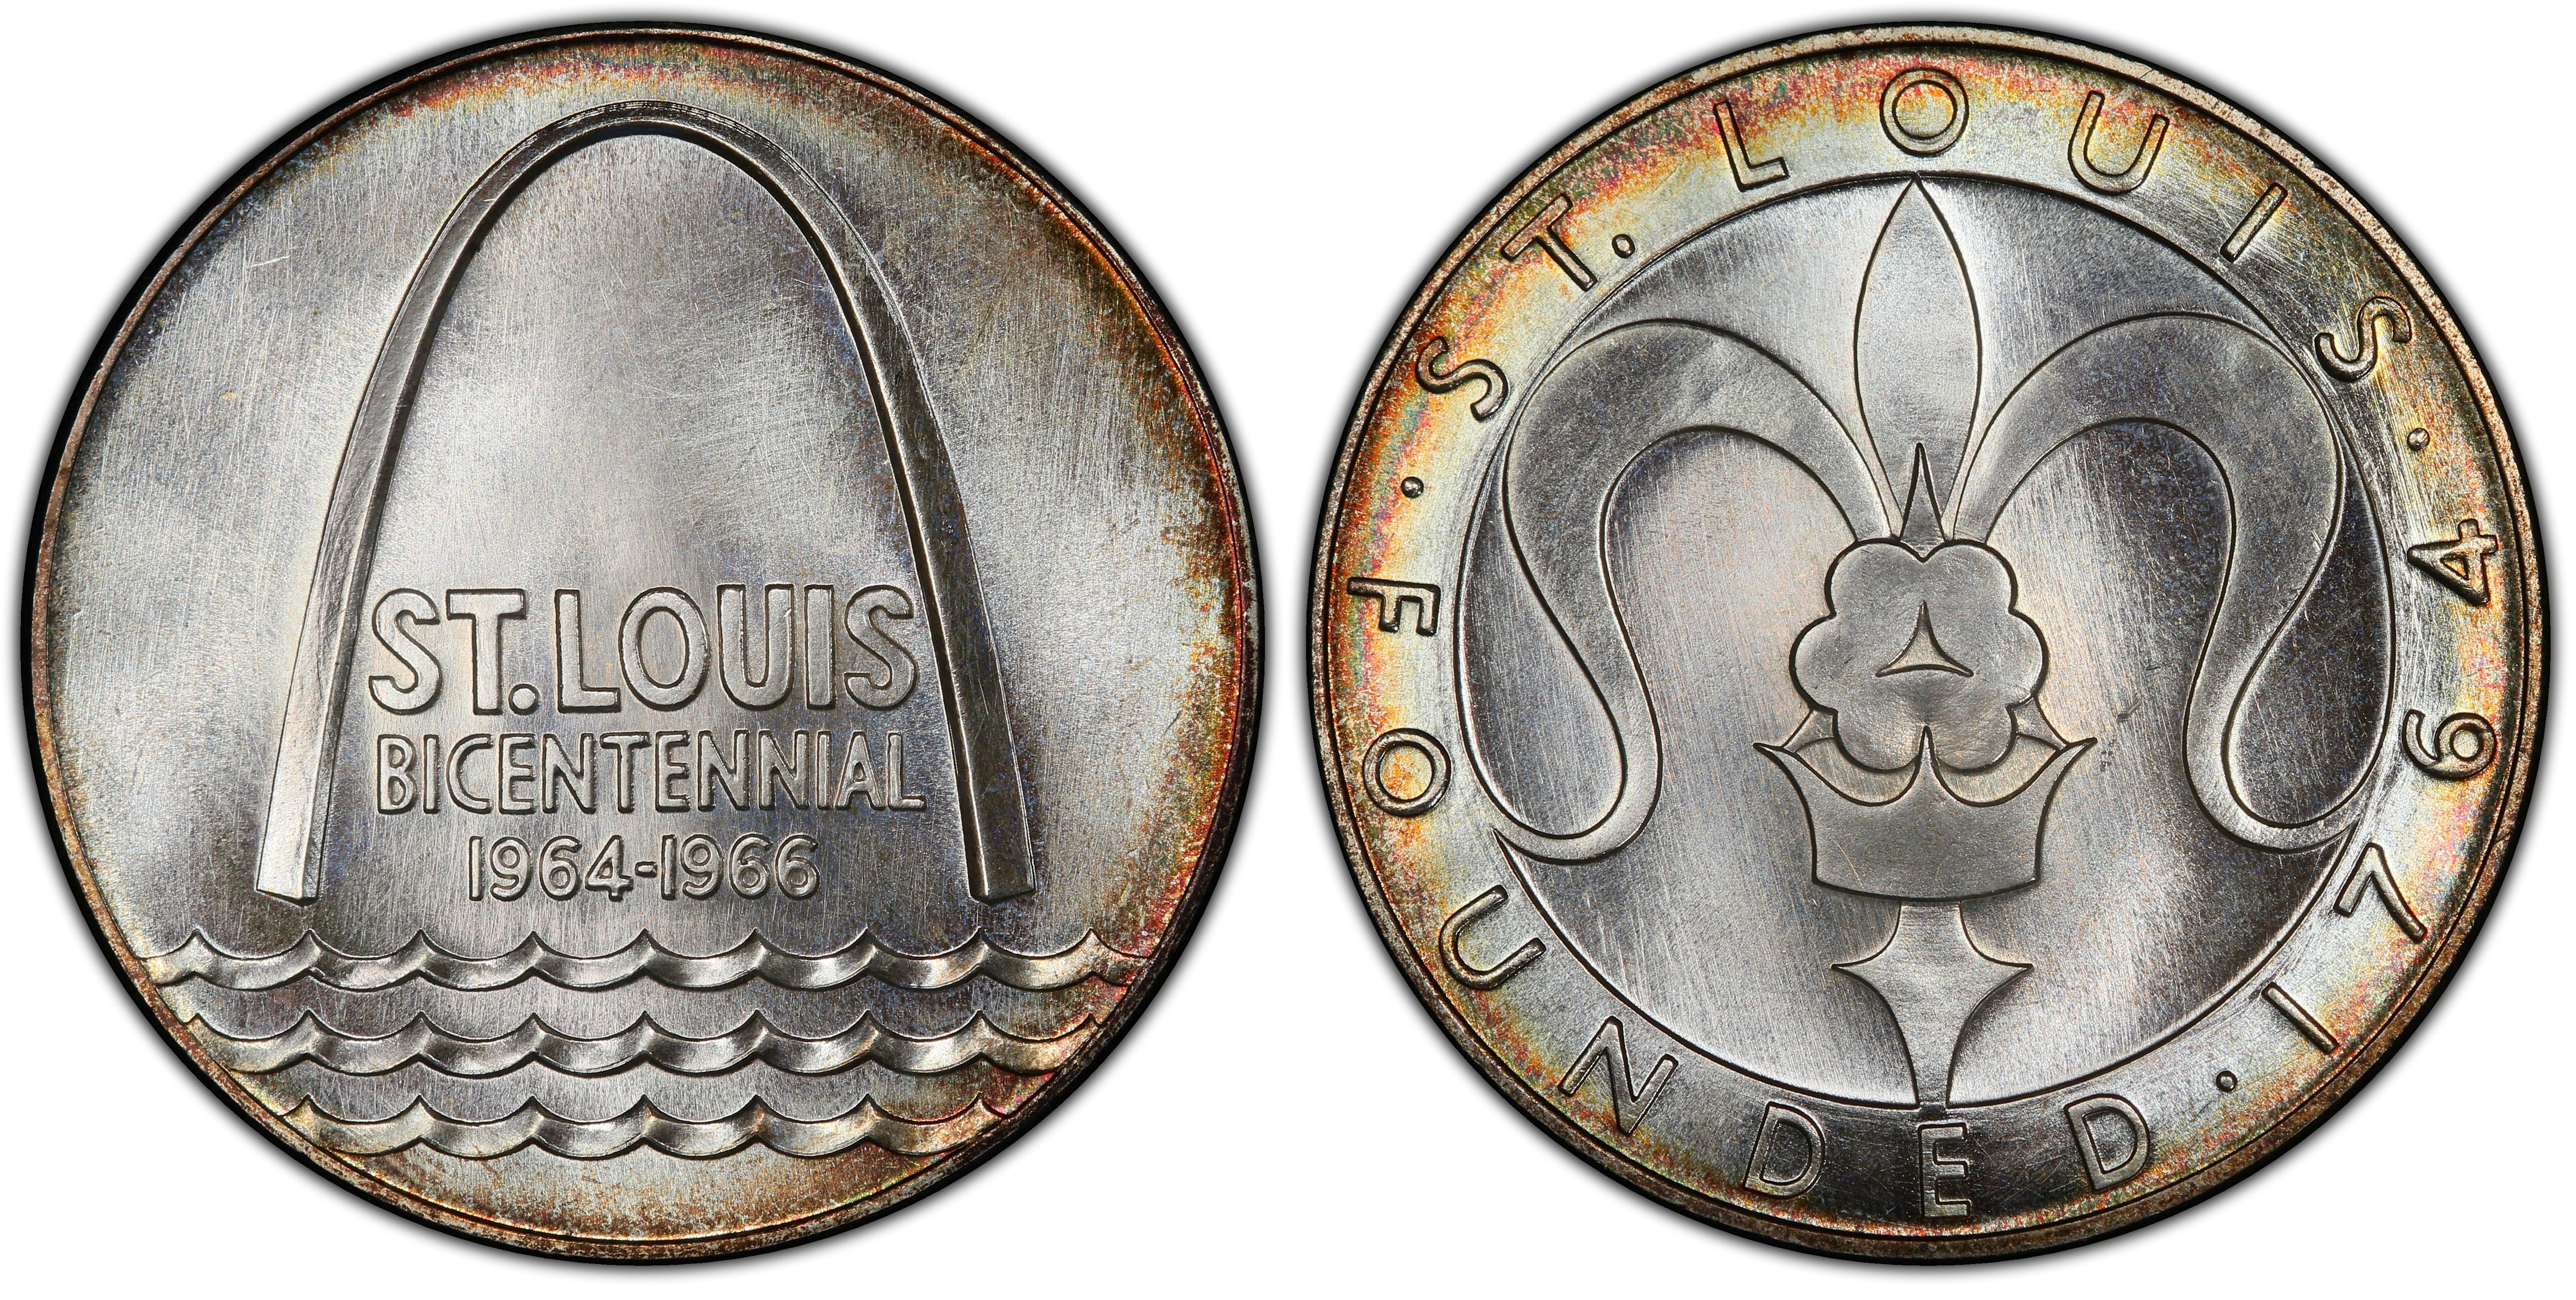 ST LOUIS BICENTENNIAL 1964-66 Bronze Official Medal Gateway Arch by U S Mint  $32.82 - PicClick AU